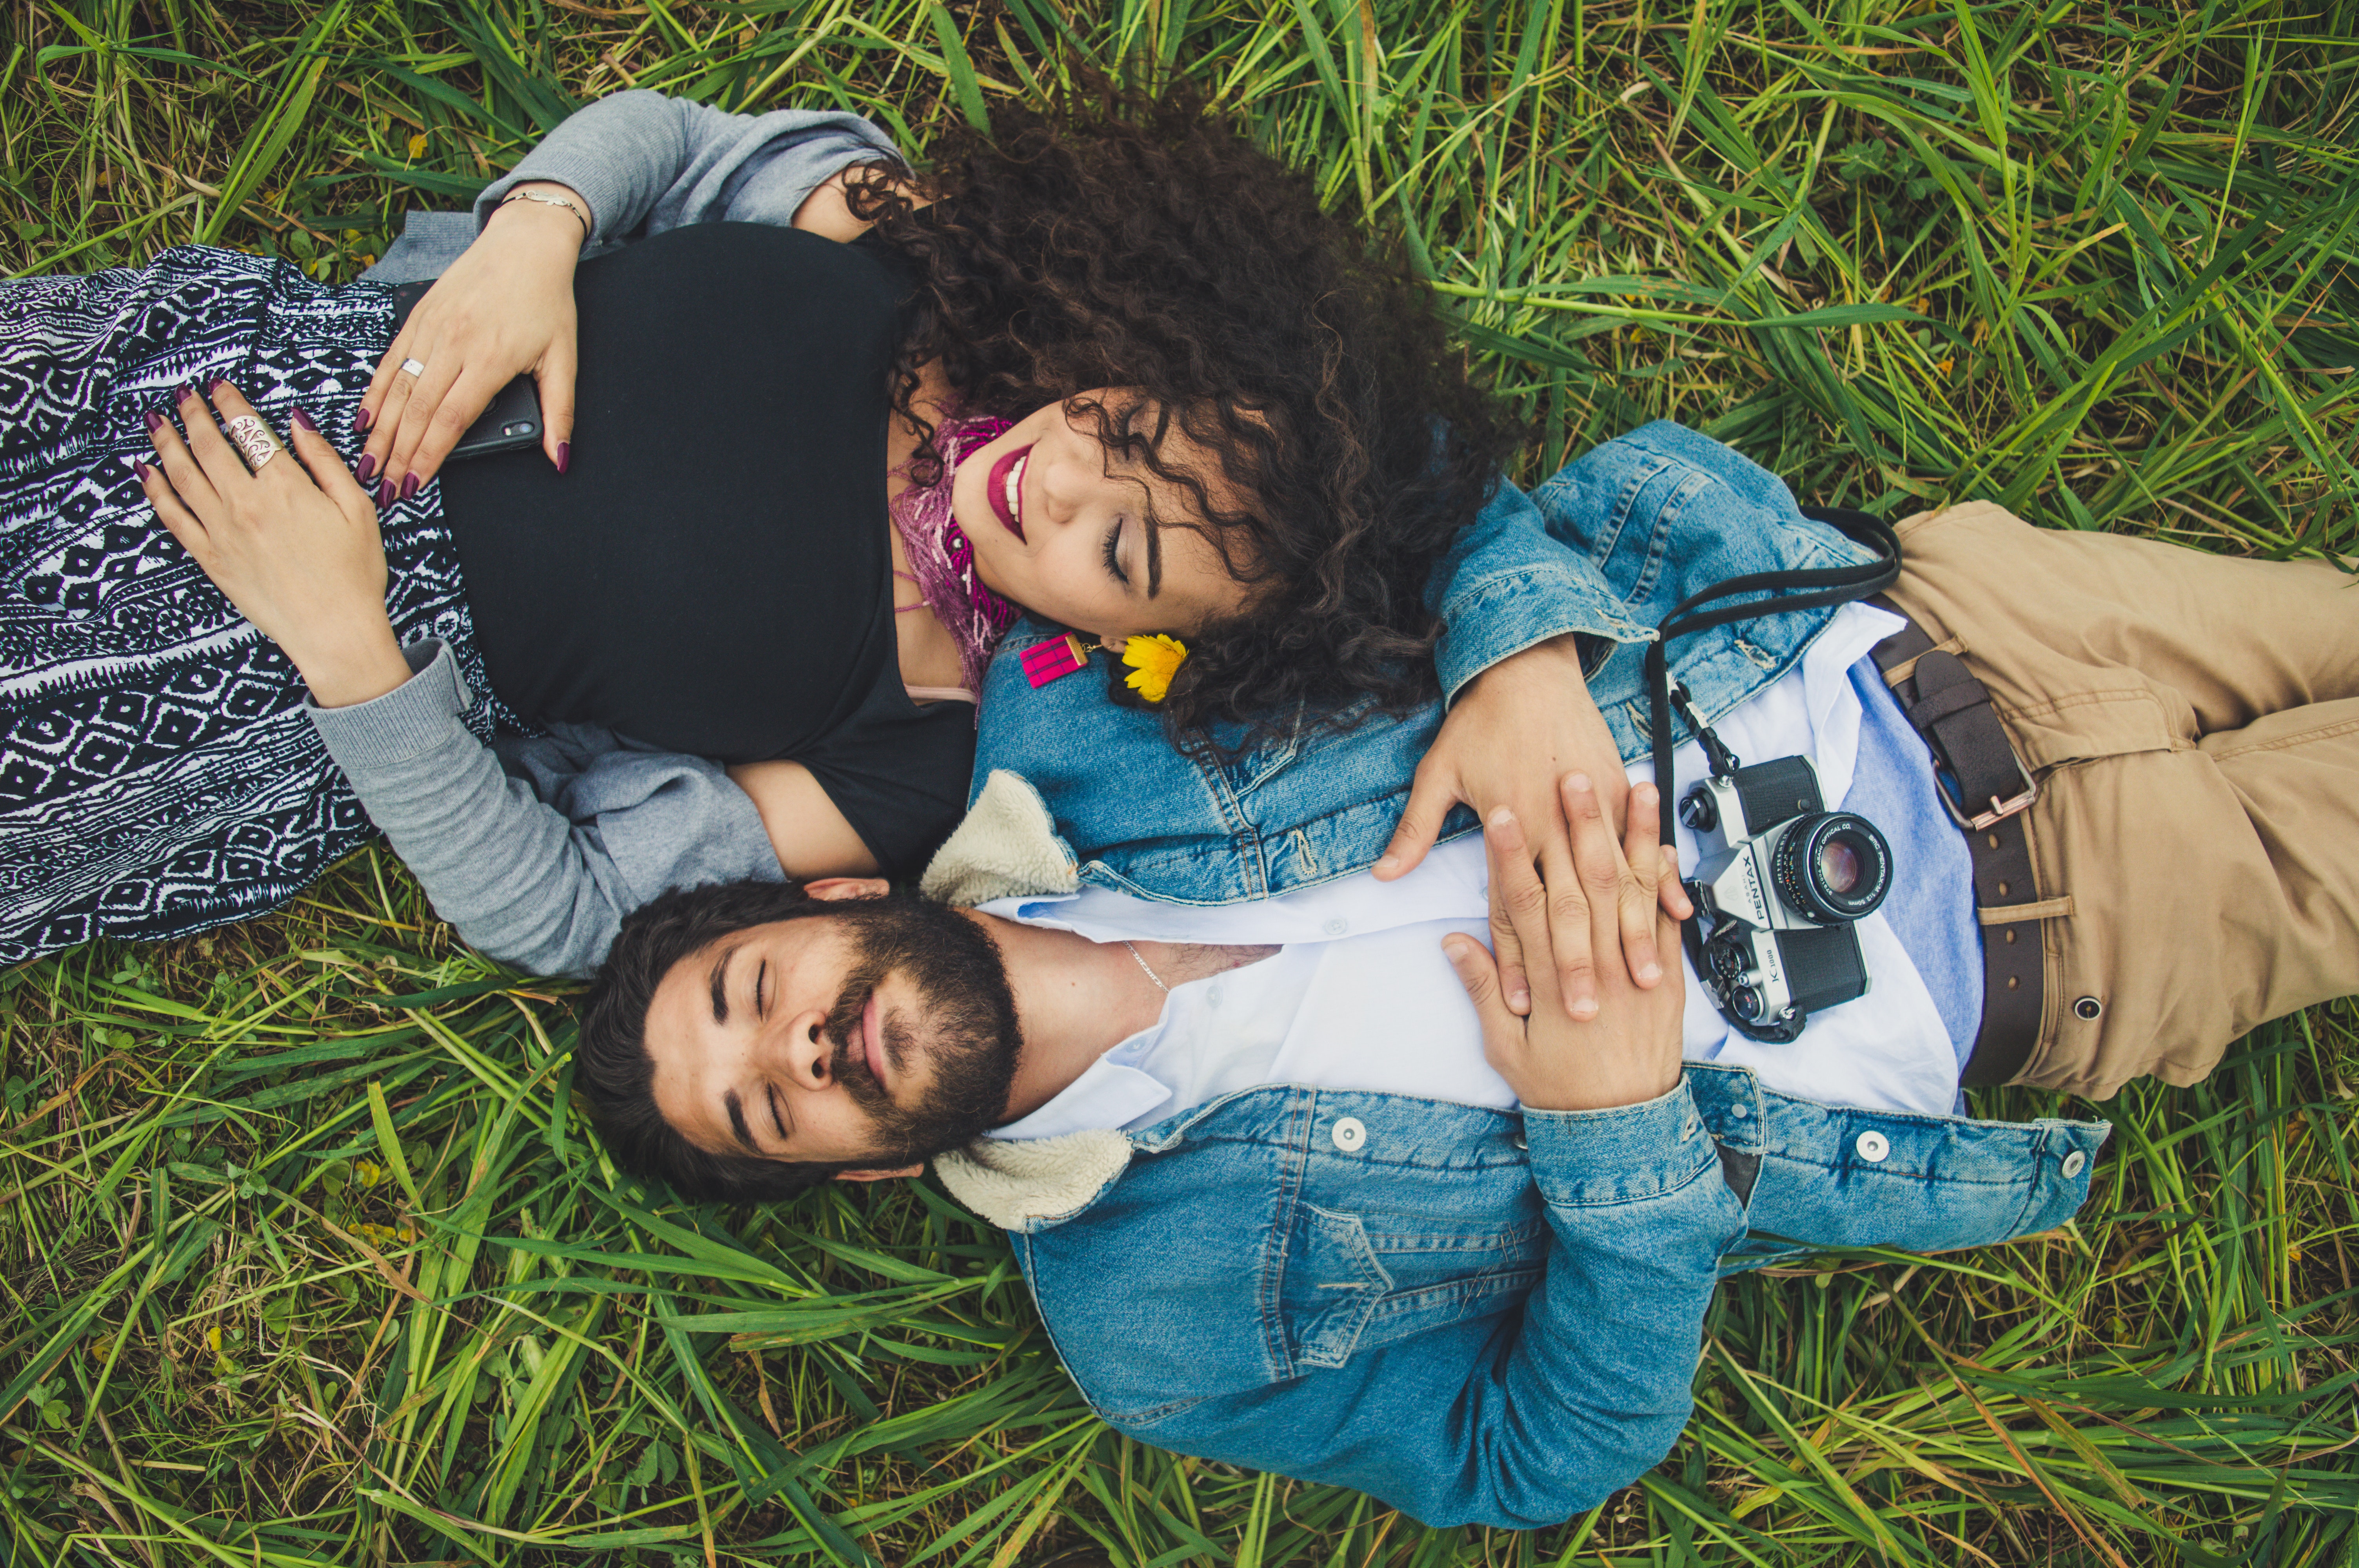 Eine Frau mit lockigen, braunen Haaren und ein Mann mit braunen Haaren und Bart liegen lächelnd im Gras. Ihre Köpfe liegen nebeneinander, die Füße zeigen in unterschiedliche Richtungen.